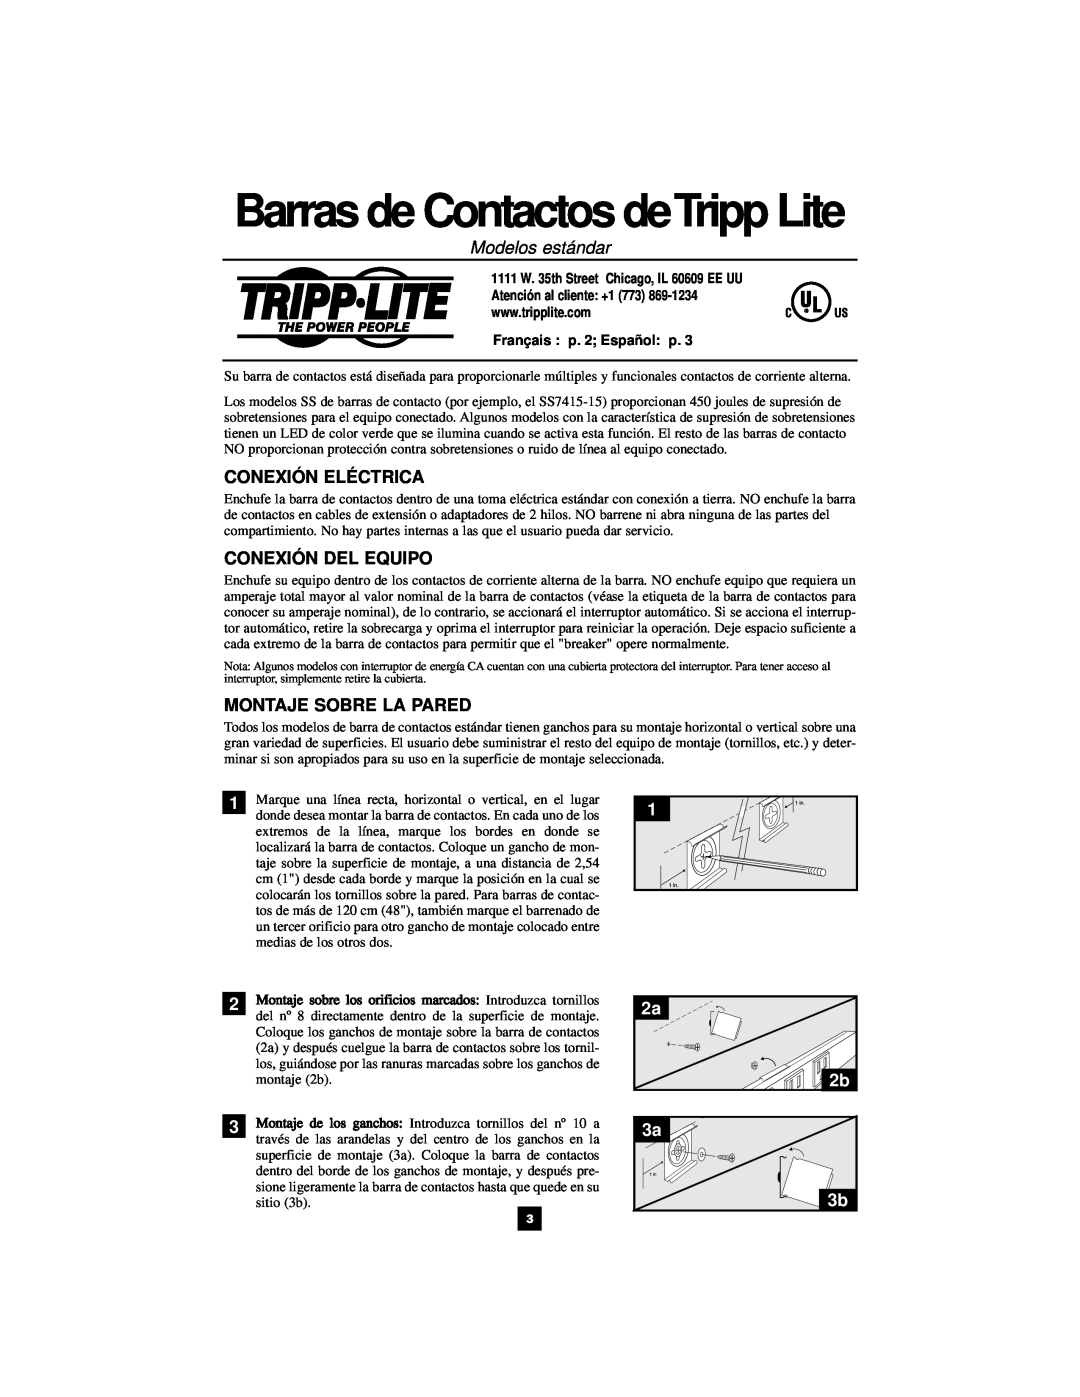 Tripp Lite 932005 Modelos estándar, Conexión Eléctrica, Conexión Del Equipo, Montaje Sobre La Pared, Français p. 2 Español 